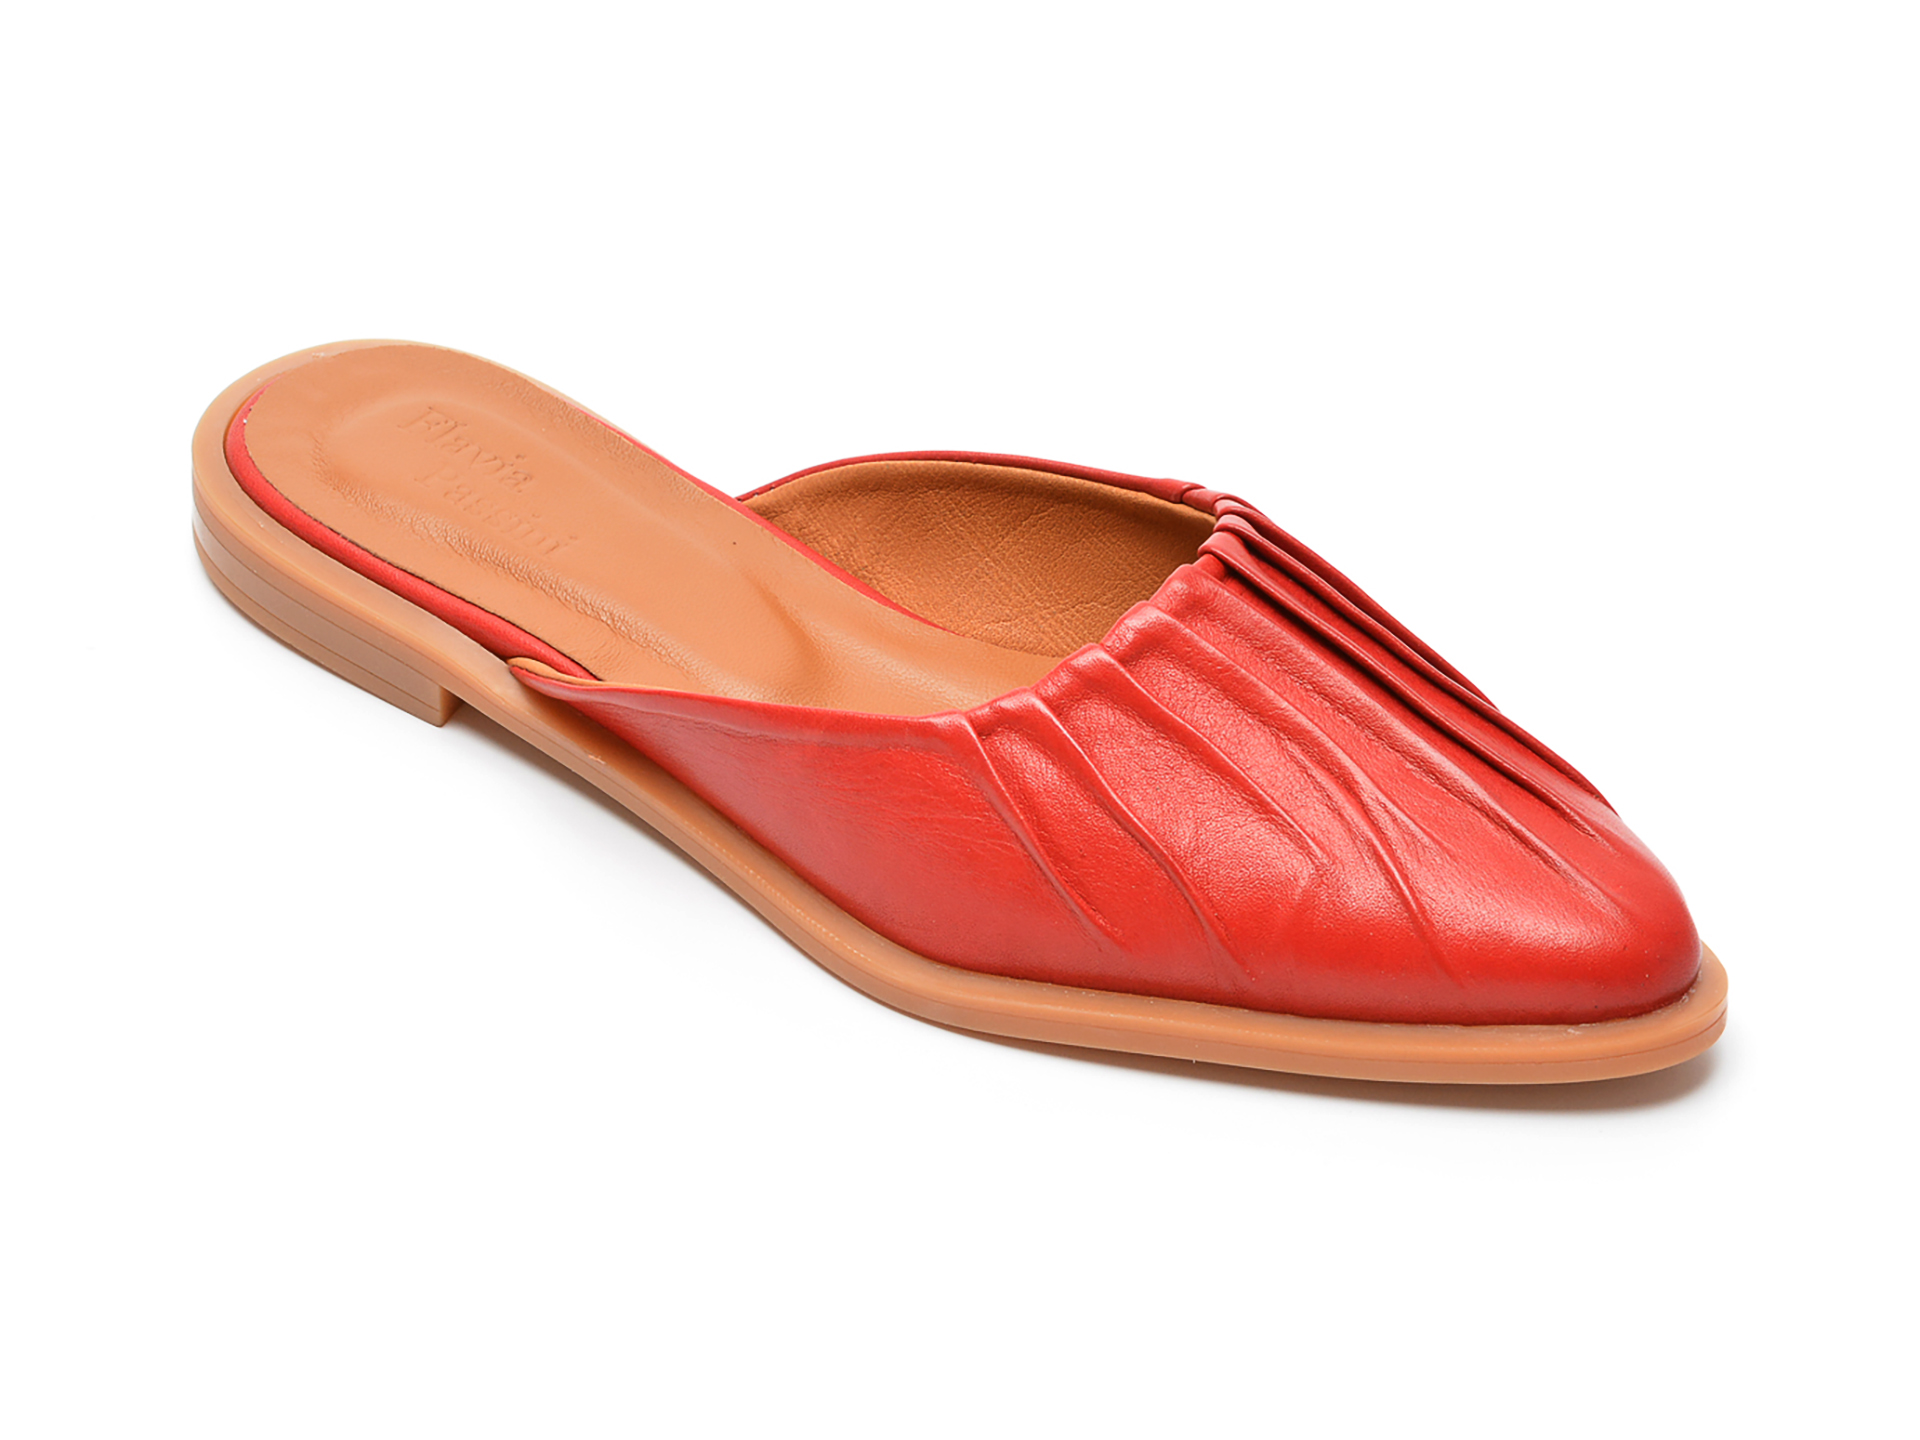 Papuci FLAVIA PASSINI rosii, 22170, din piele naturala Flavia Passini imagine 2022 13clothing.ro